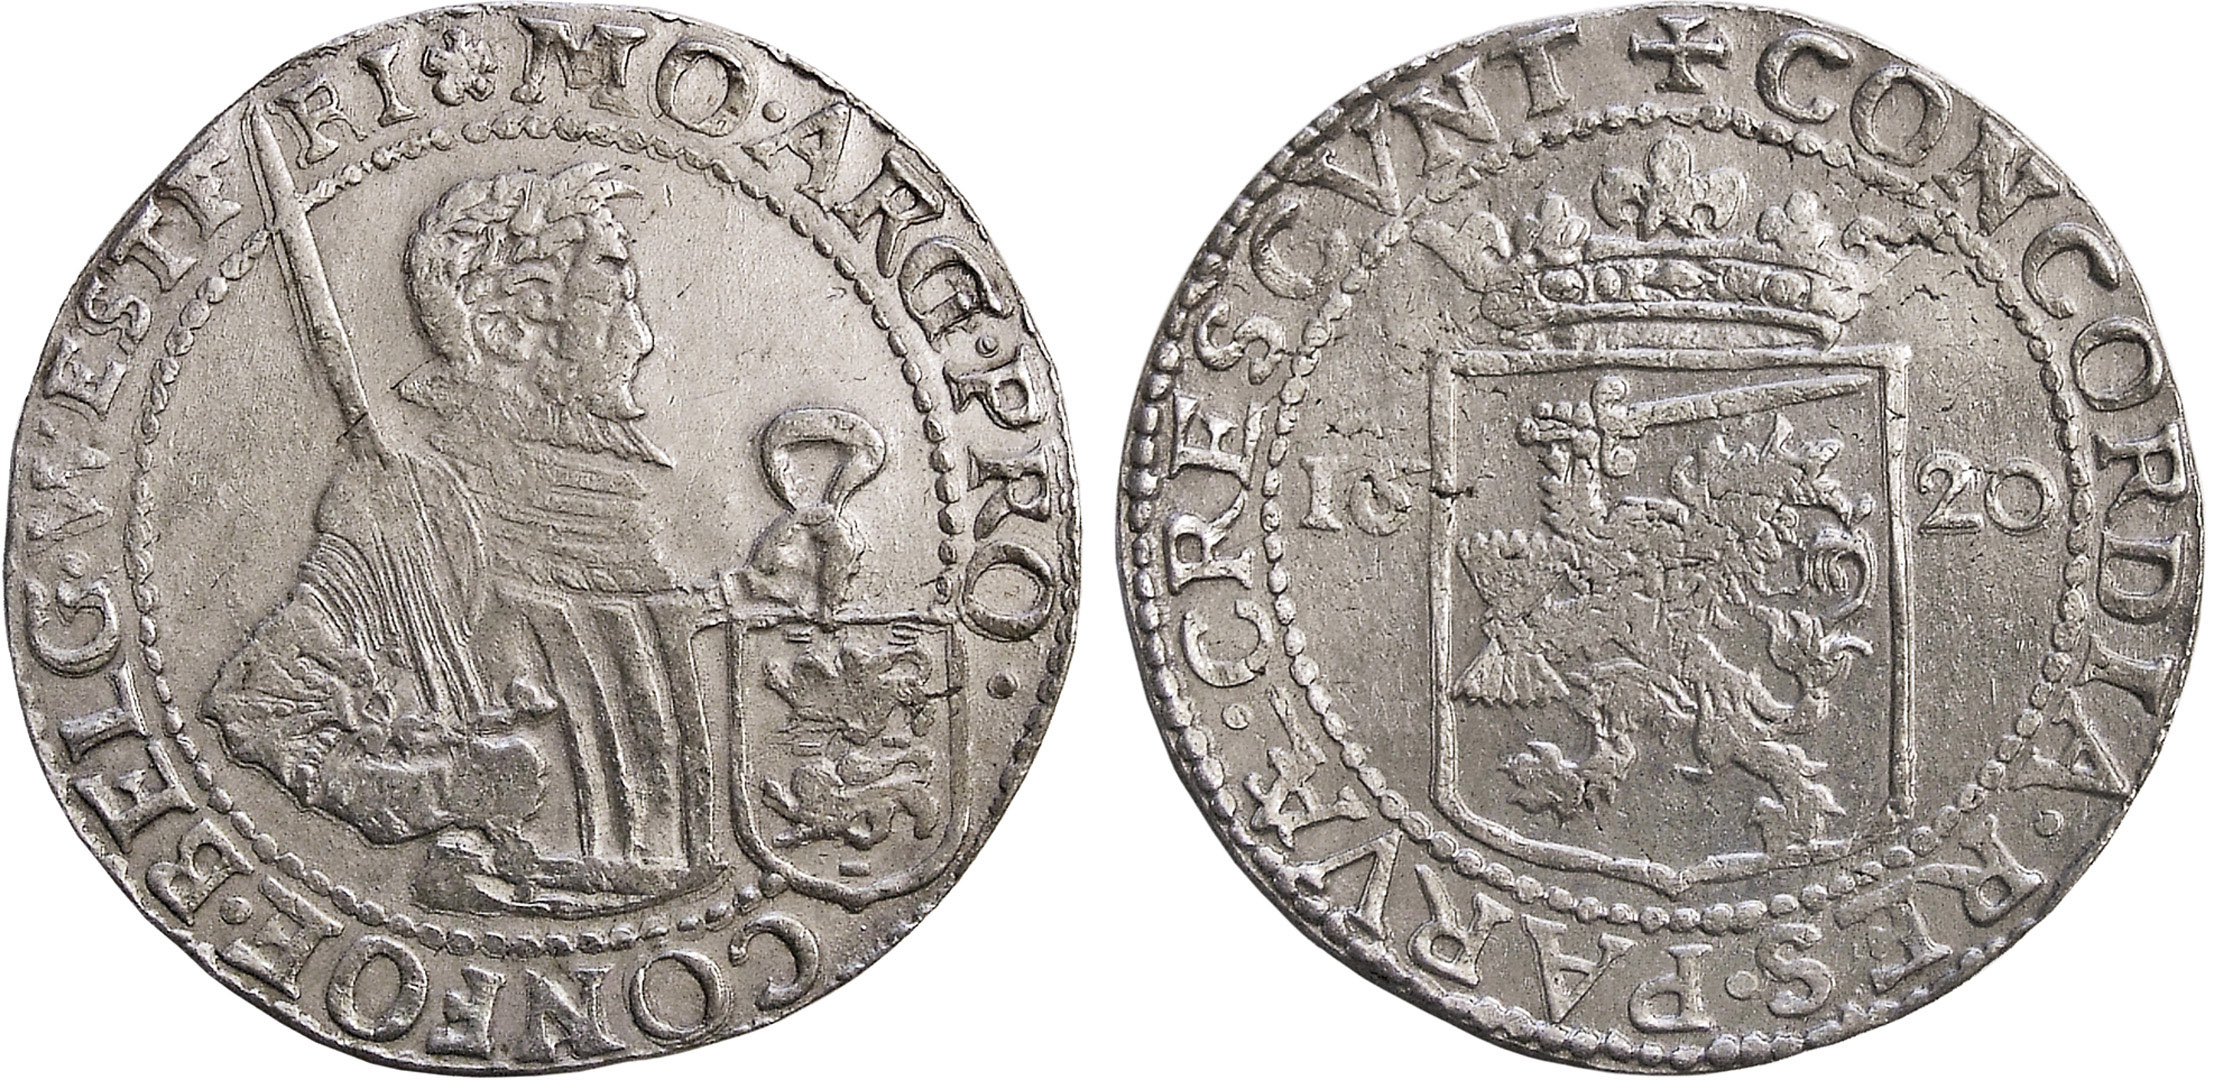 Prūsija. Georgas Vilhelmas. Šilingas. 1626 m. Sidabras. Ø 16 mm, L. Stuokos-Gucevičiaus g. lobio (Vilnius, 1630/2003) moneta